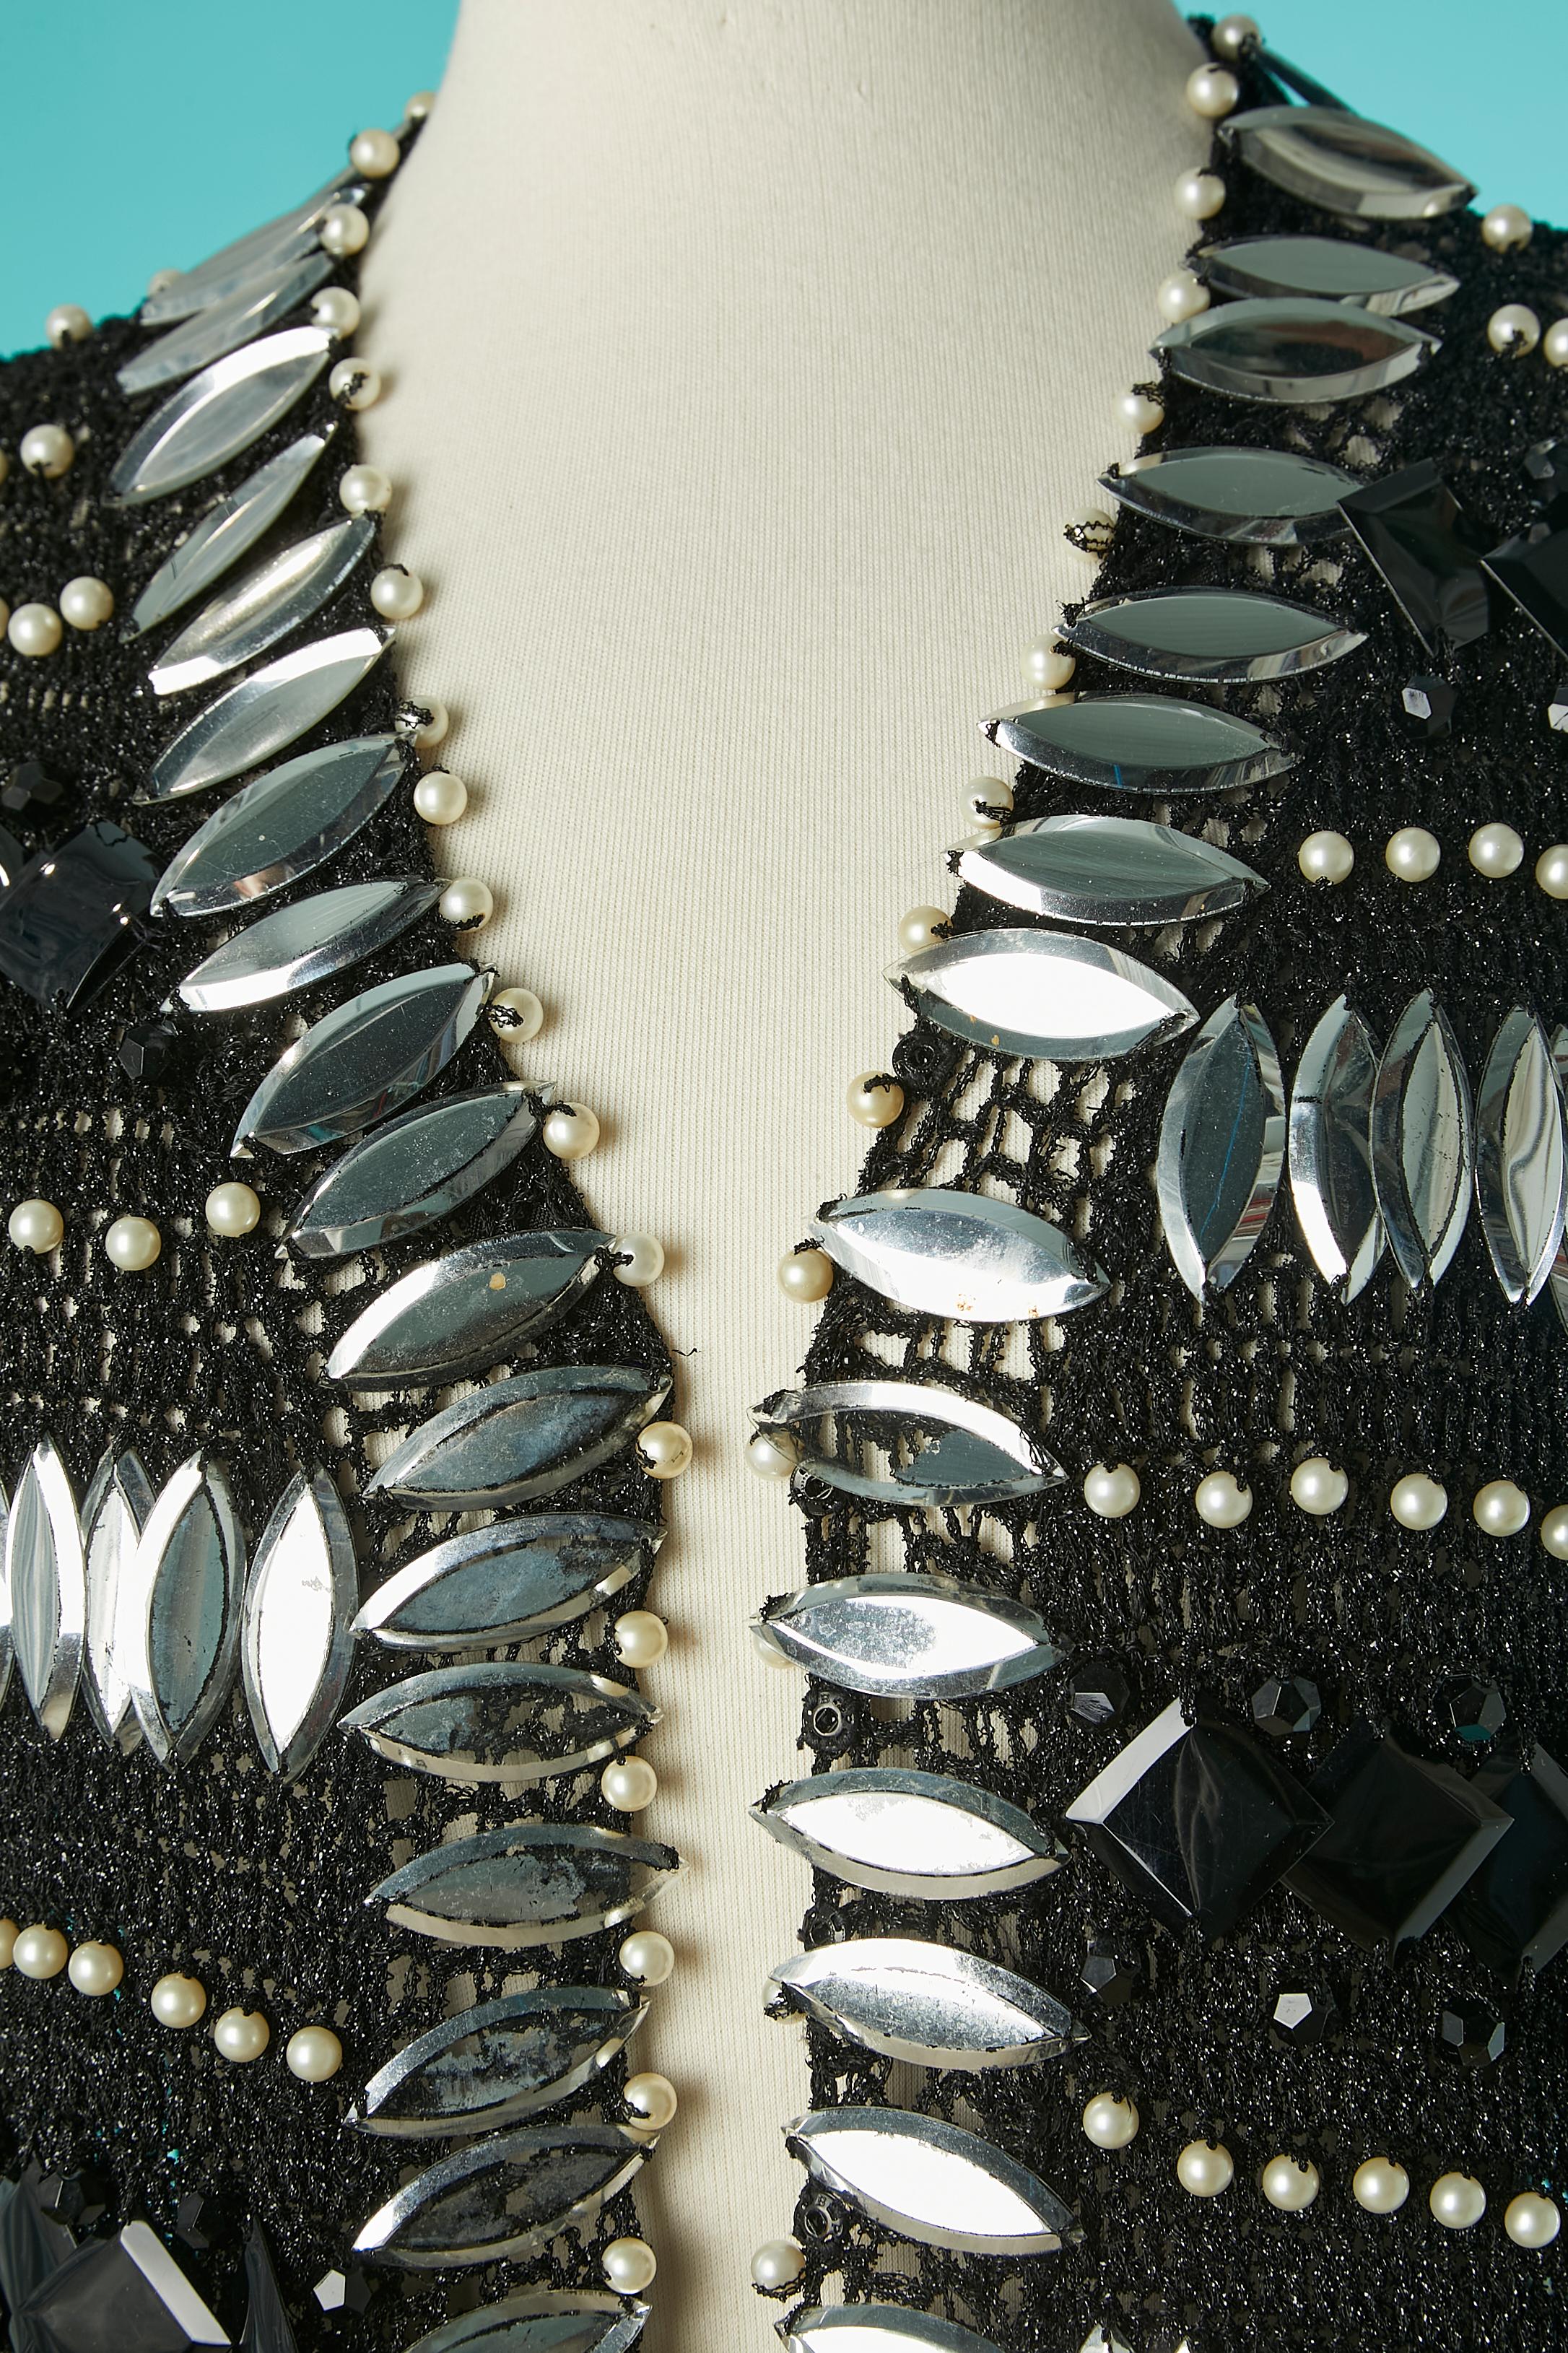 Schwarzer Lurex-Strickmantel mit Perlen, Perlen und silbernen Kunststoff-Cabochons als Verzierung. 
GRÖSSE M